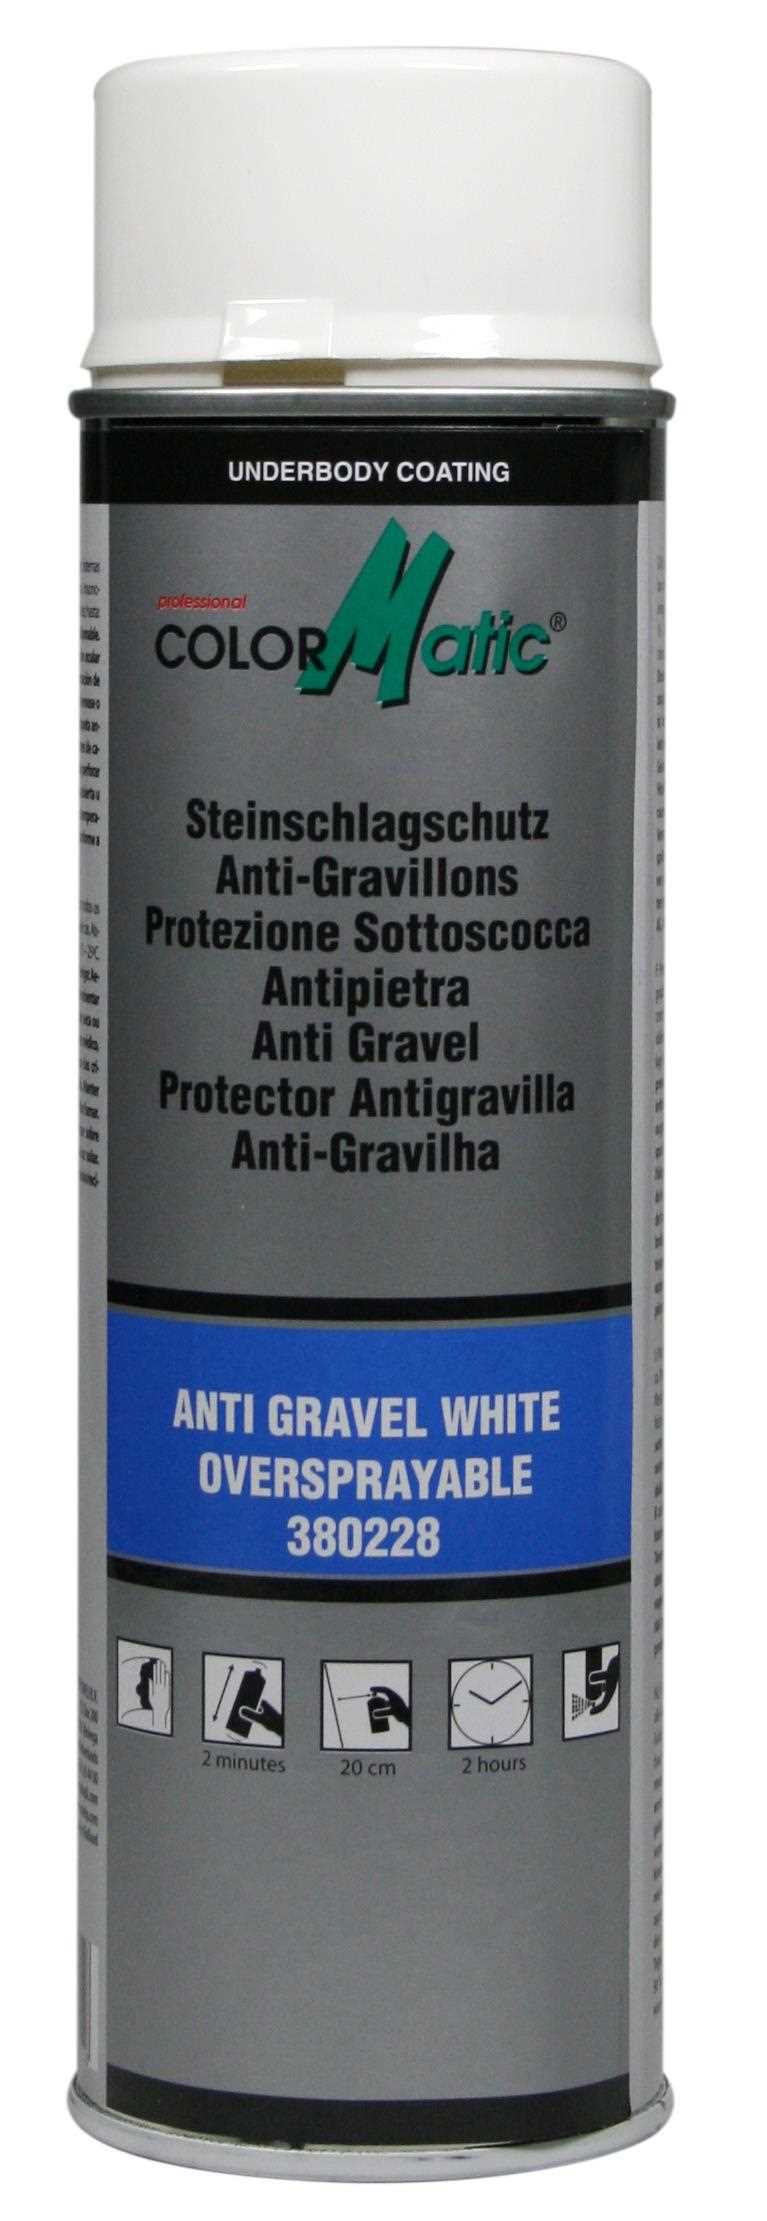 Anti Gravel Spray White 